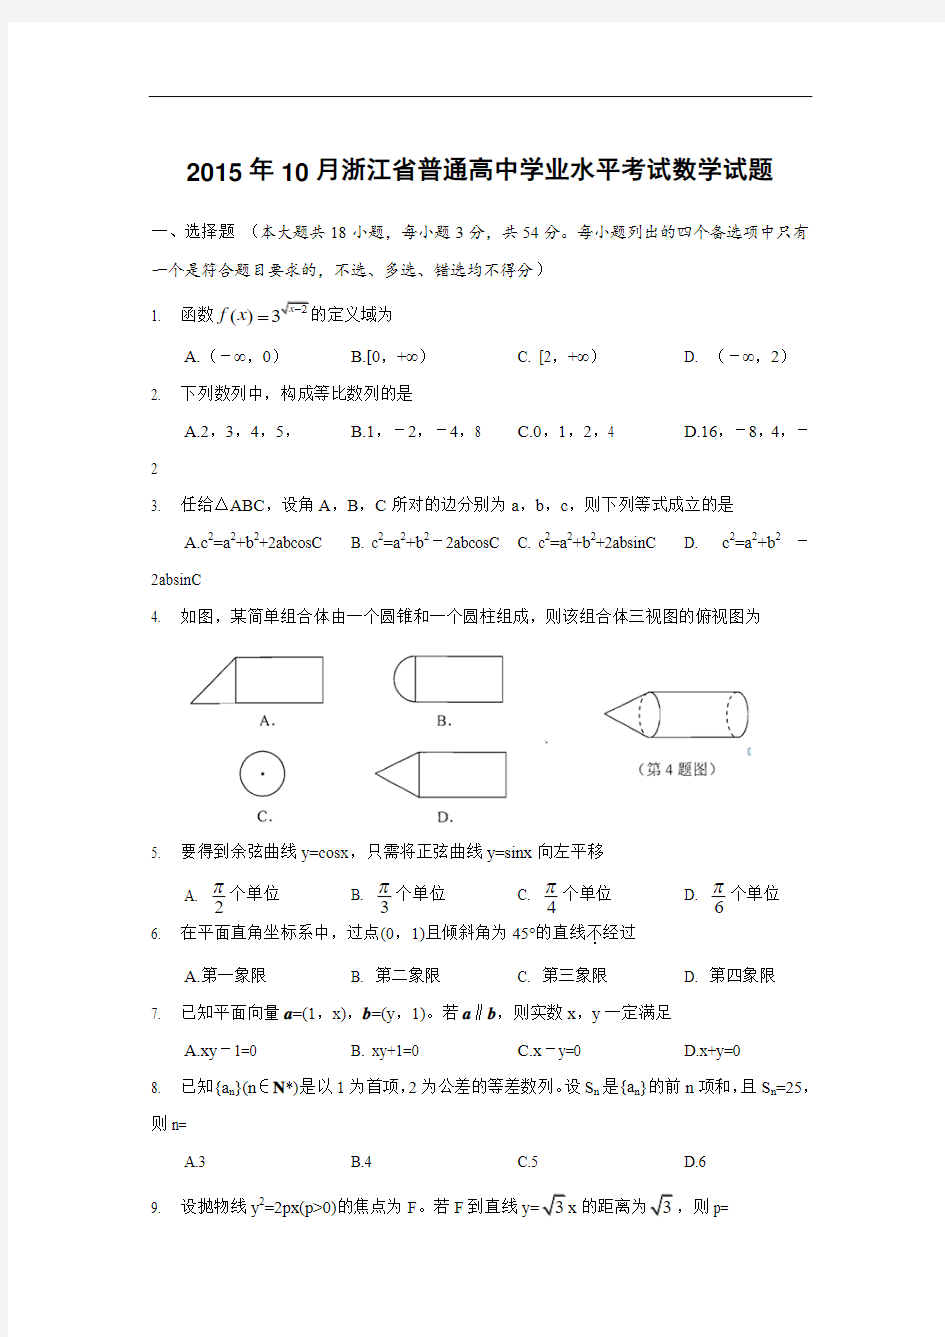 浙江升2014-2015学考数学试卷(学业水平考试)